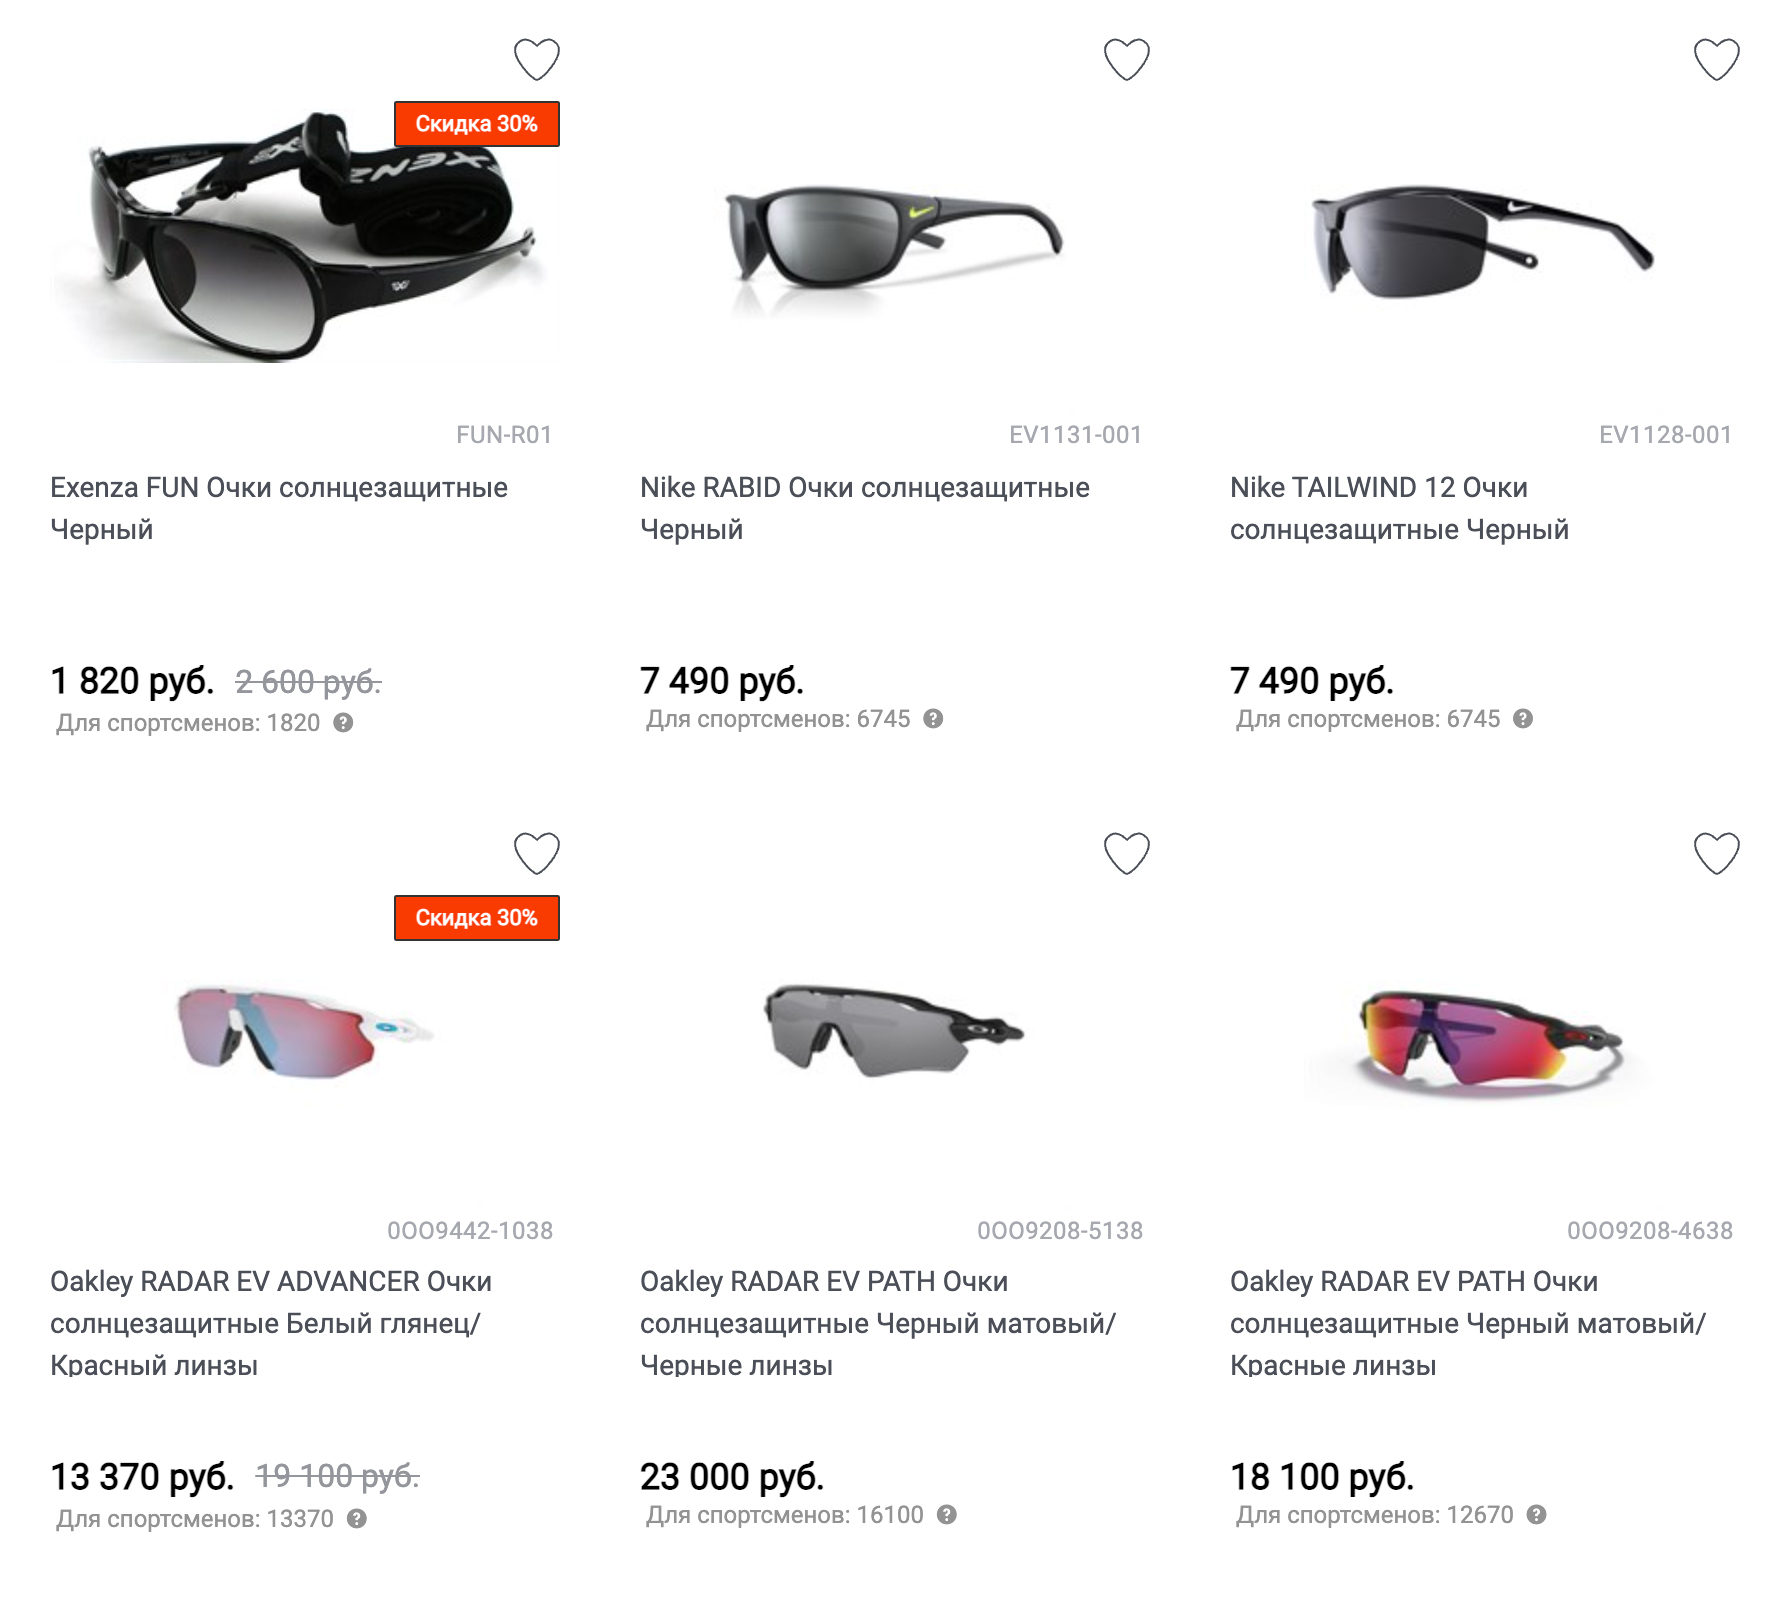 Специальные спортивные солнцезащитные очки стоят довольно дорого, но на распродажах можно найти модели от 2000 ₽. Источник: kinash.ru